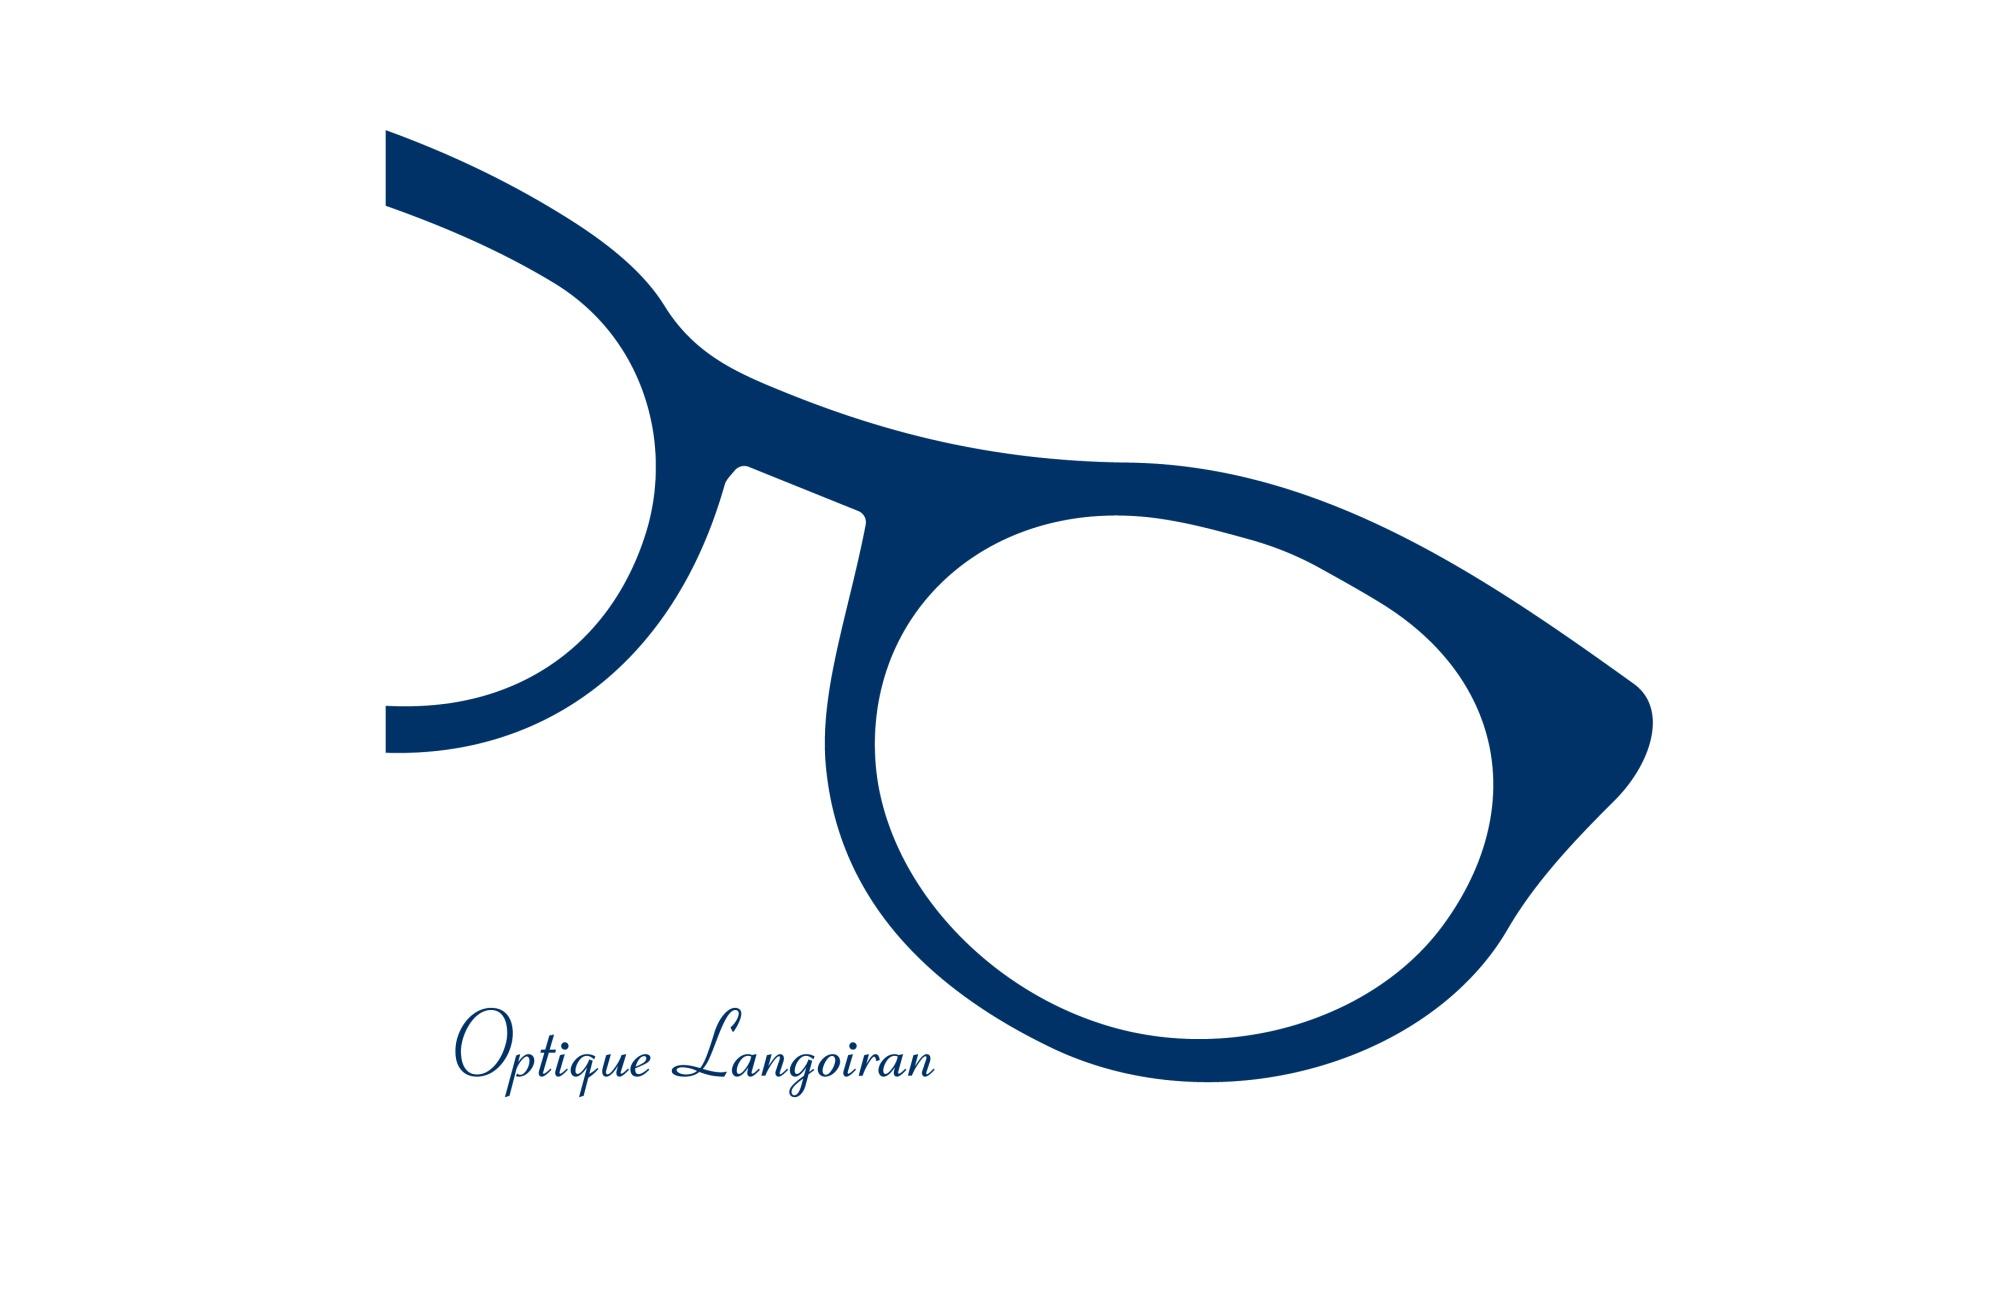 Optique Langoiran Langoiran